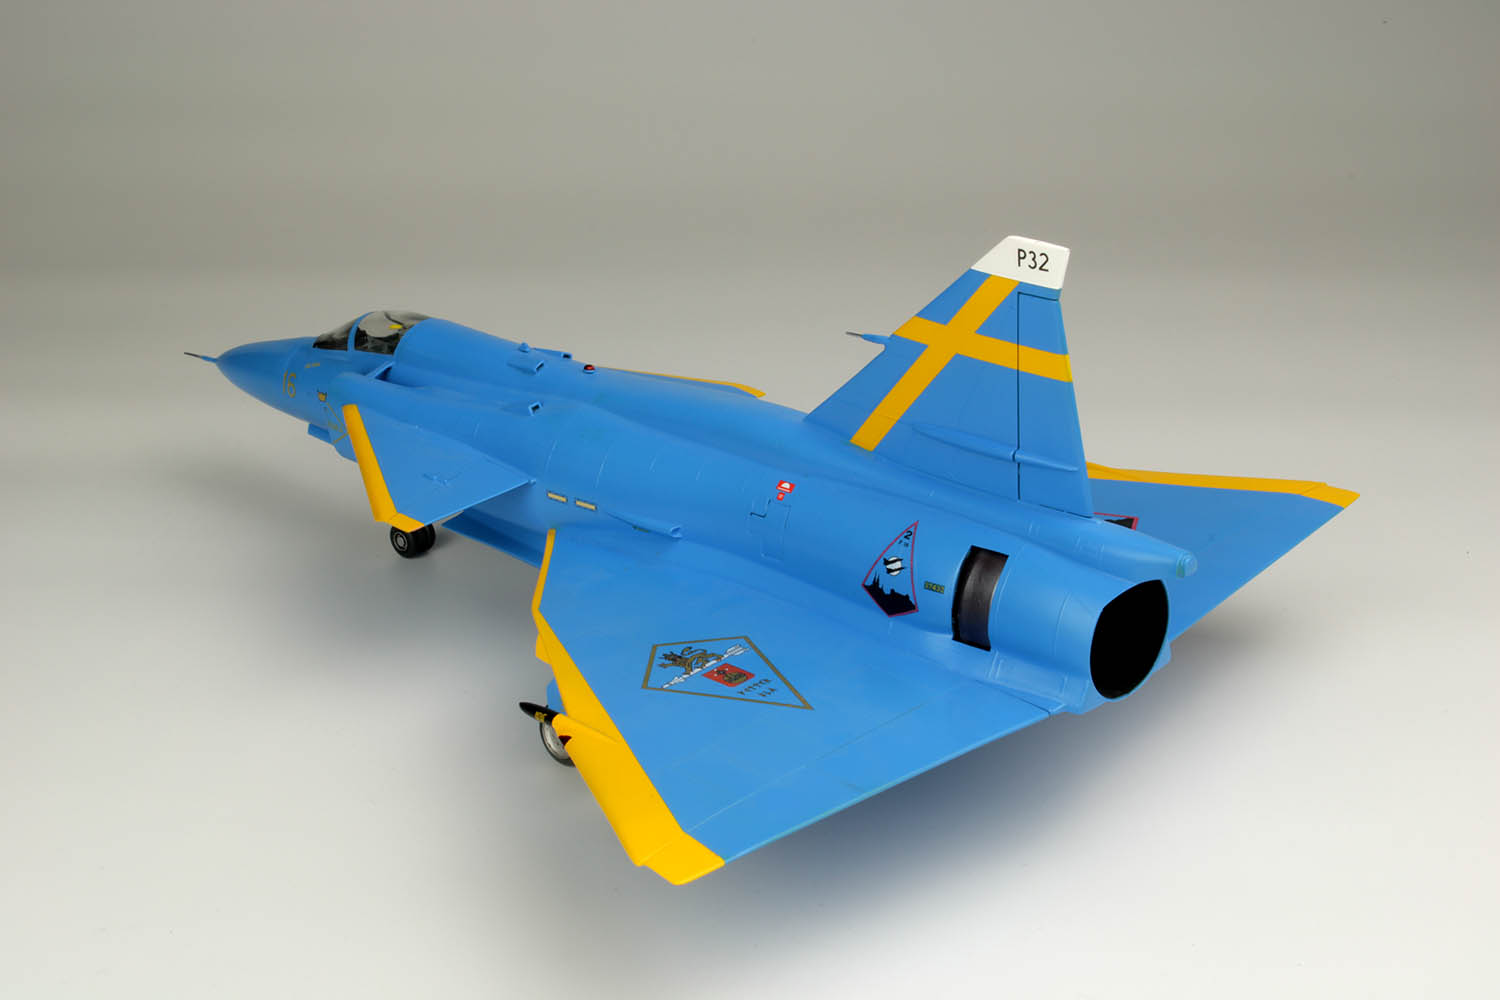 1/48 スウェーデン空軍 JA37 ヤクトビゲン "ブルーピーター" スウェーデン空軍75周年記念塗装機 - ウインドウを閉じる